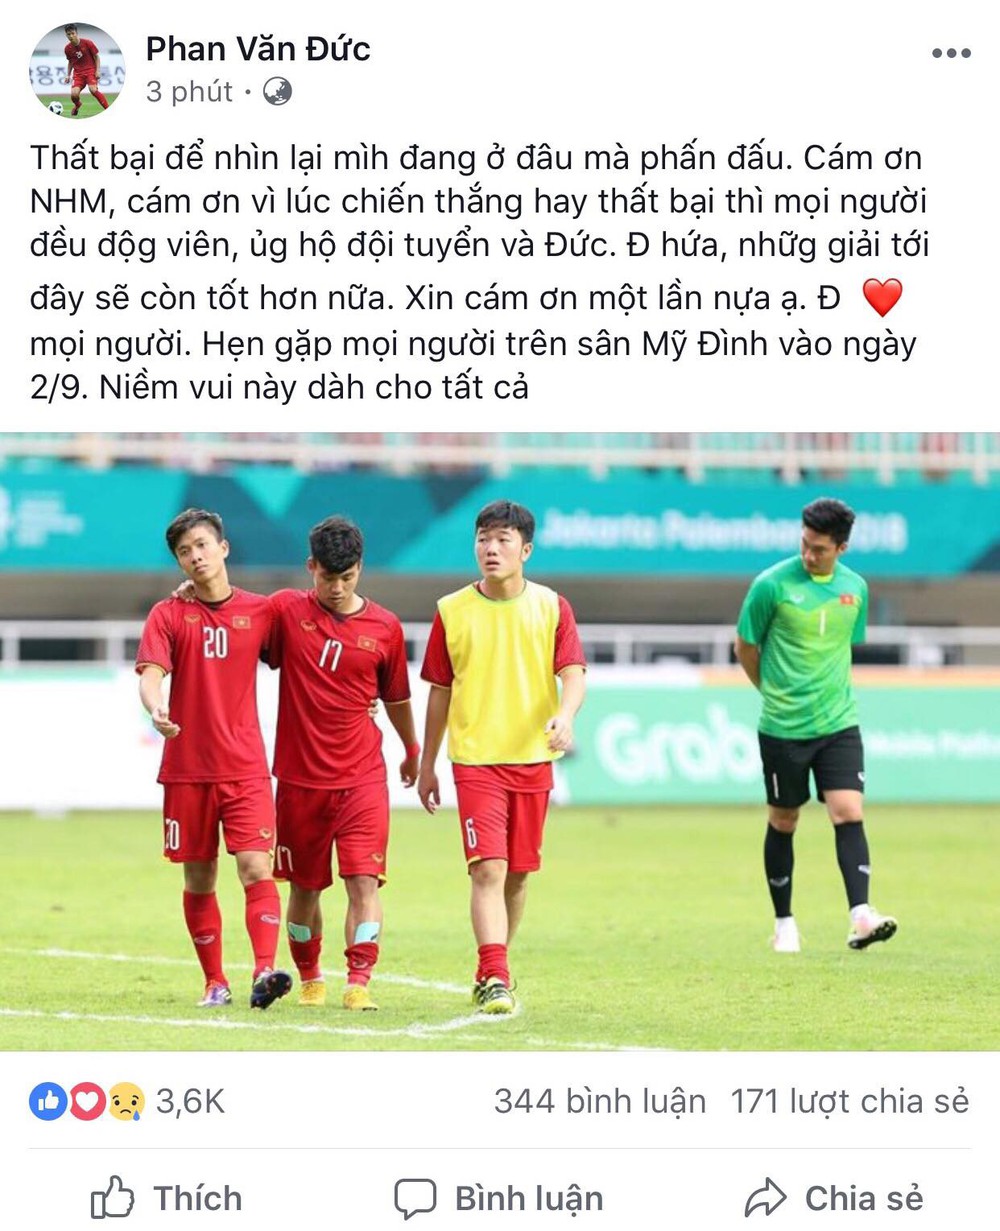 Công Phượng, Văn Toàn cùng nhiều cầu thủ nói lời tạm biệt U23 Việt Nam sau thất bại trước UAE - Ảnh 2.